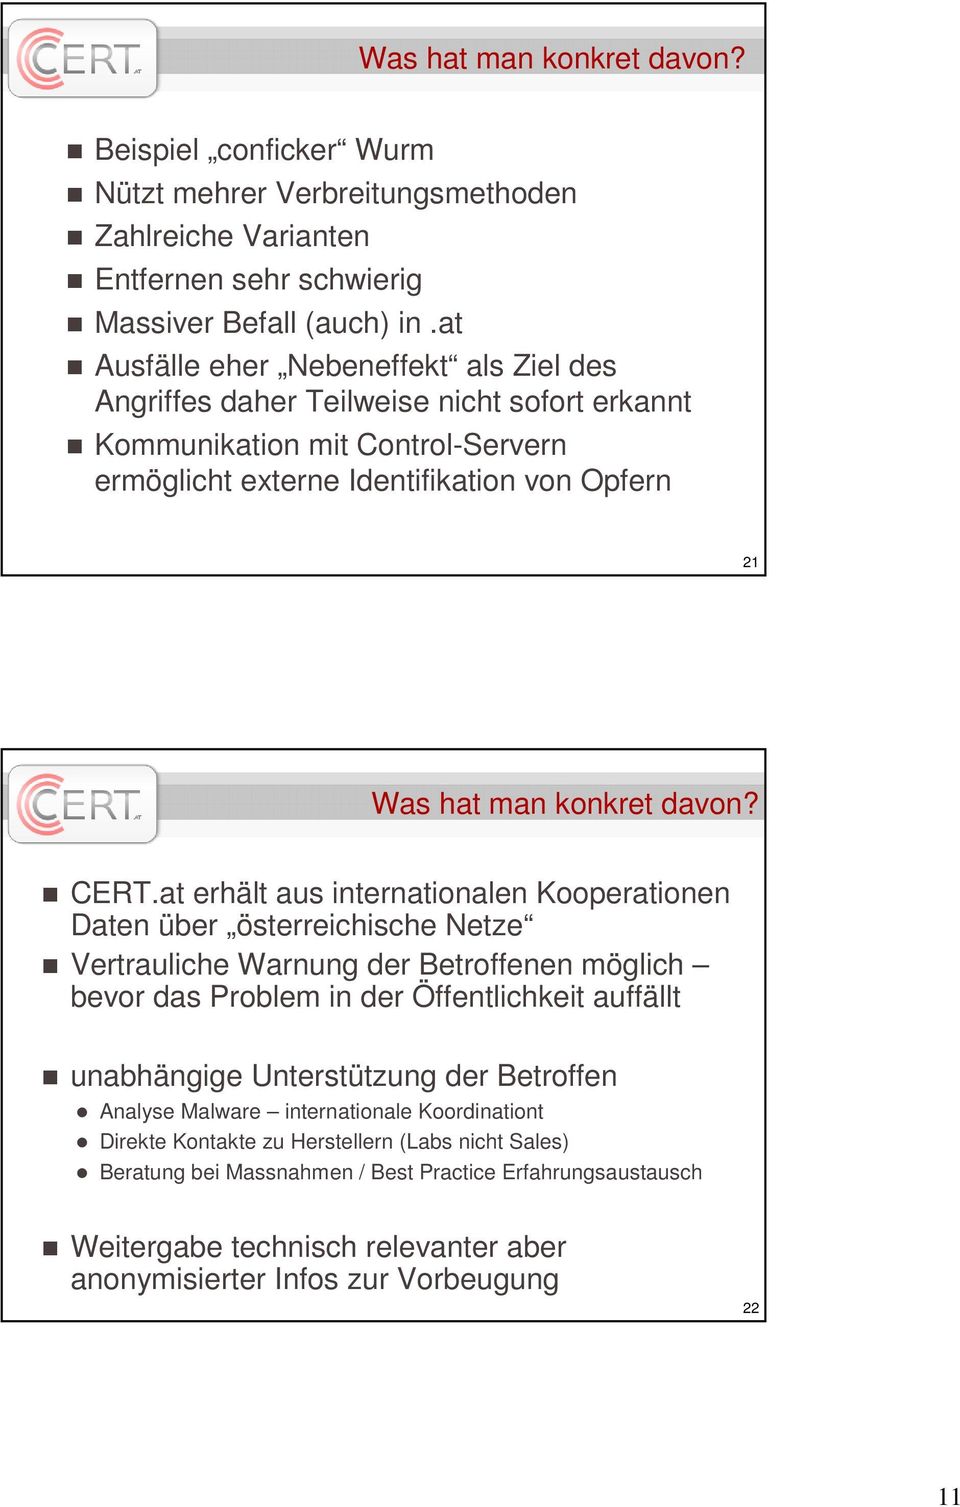 CERT.at erhält aus internationalen Kooperationen Daten über österreichische Netze Vertrauliche Warnung der Betroffenen möglich bevor das Problem in der Öffentlichkeit auffällt unabhängige